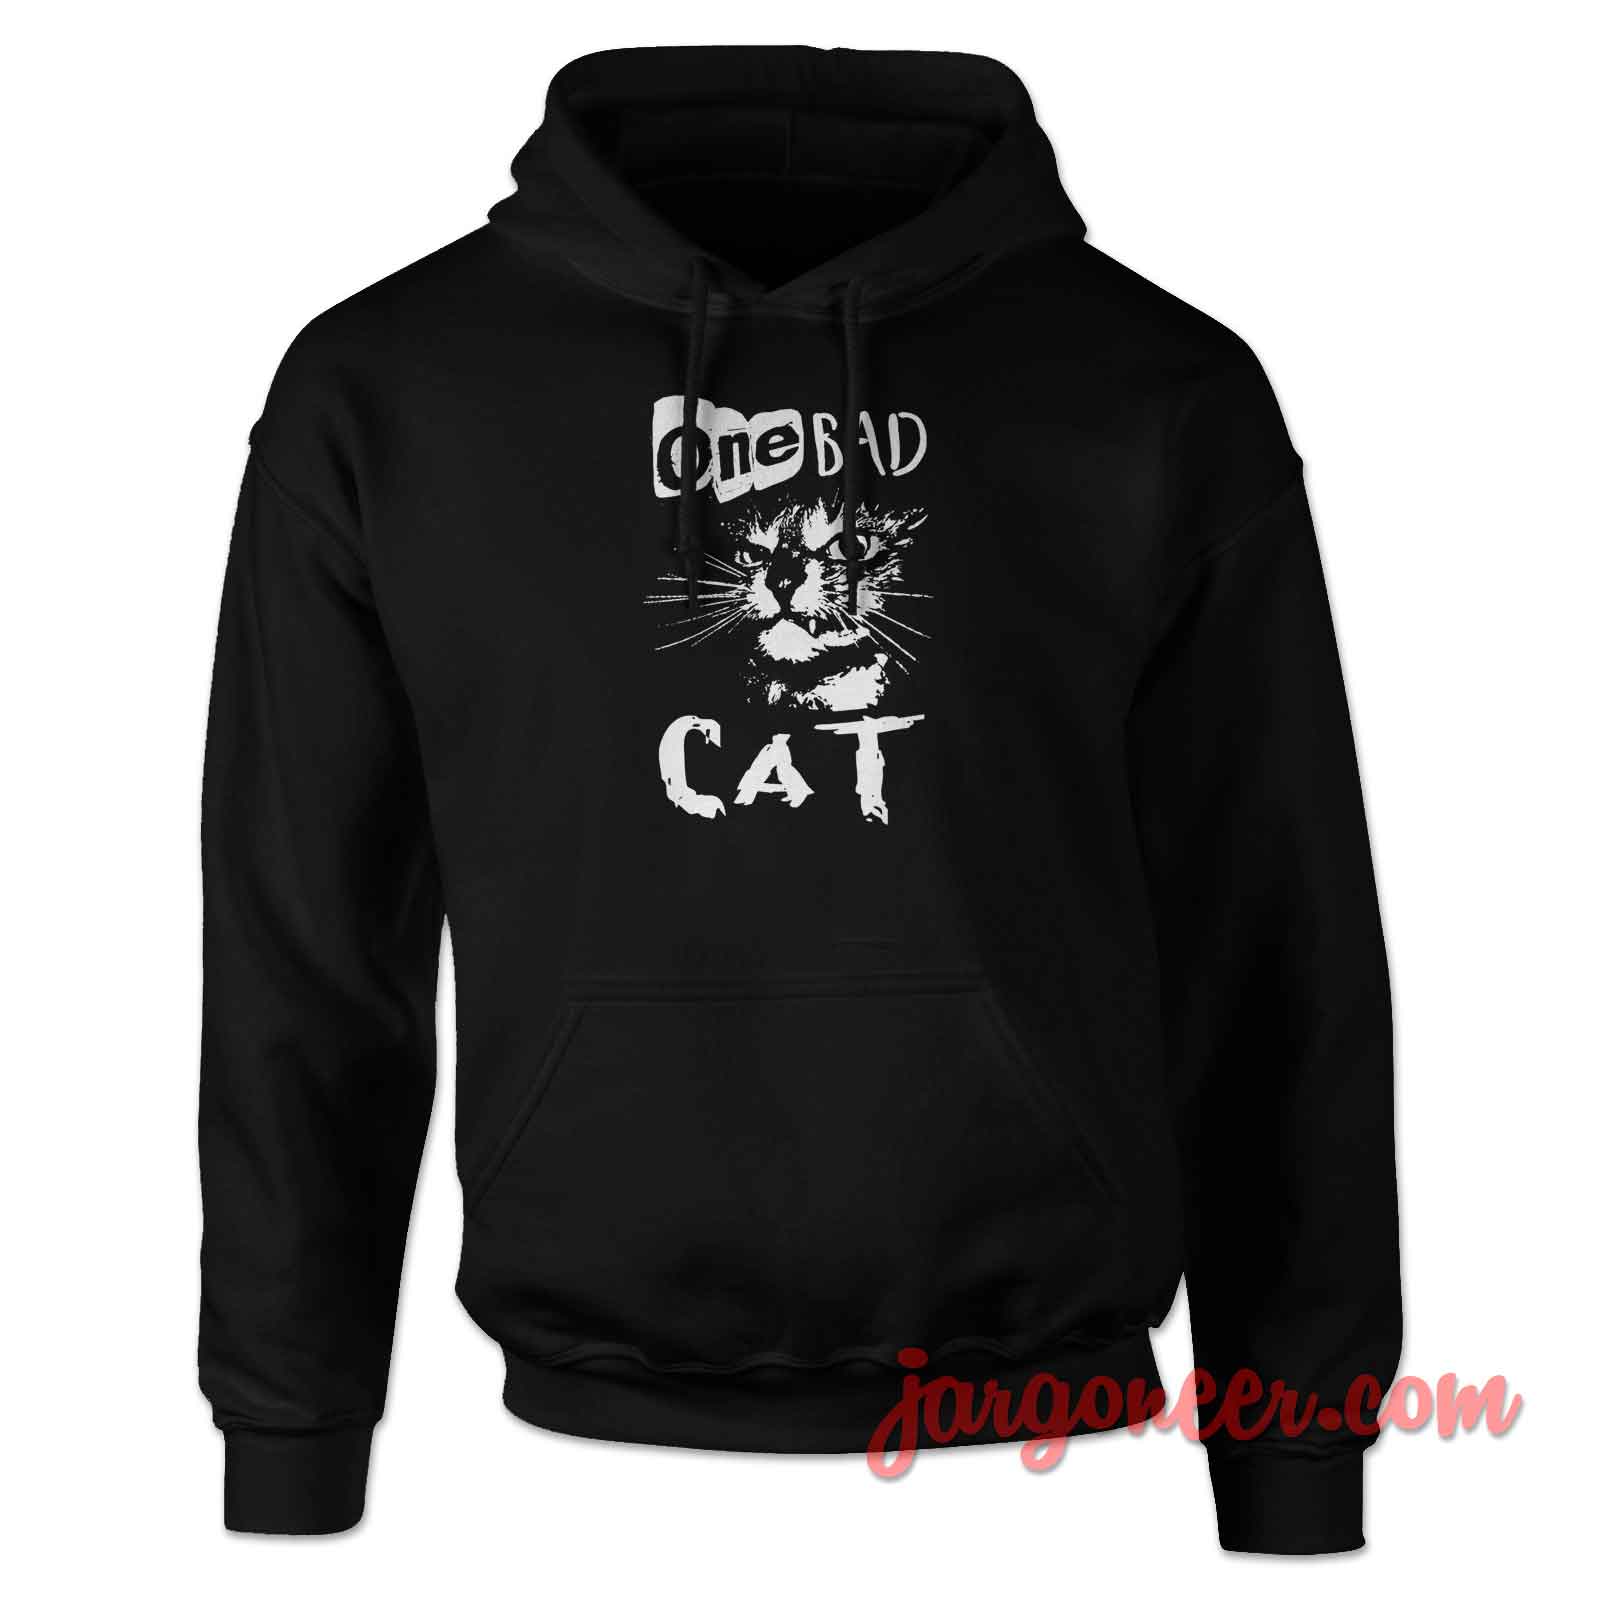 One Bad Cat - Shop Unique Graphic Cool Shirt Designs